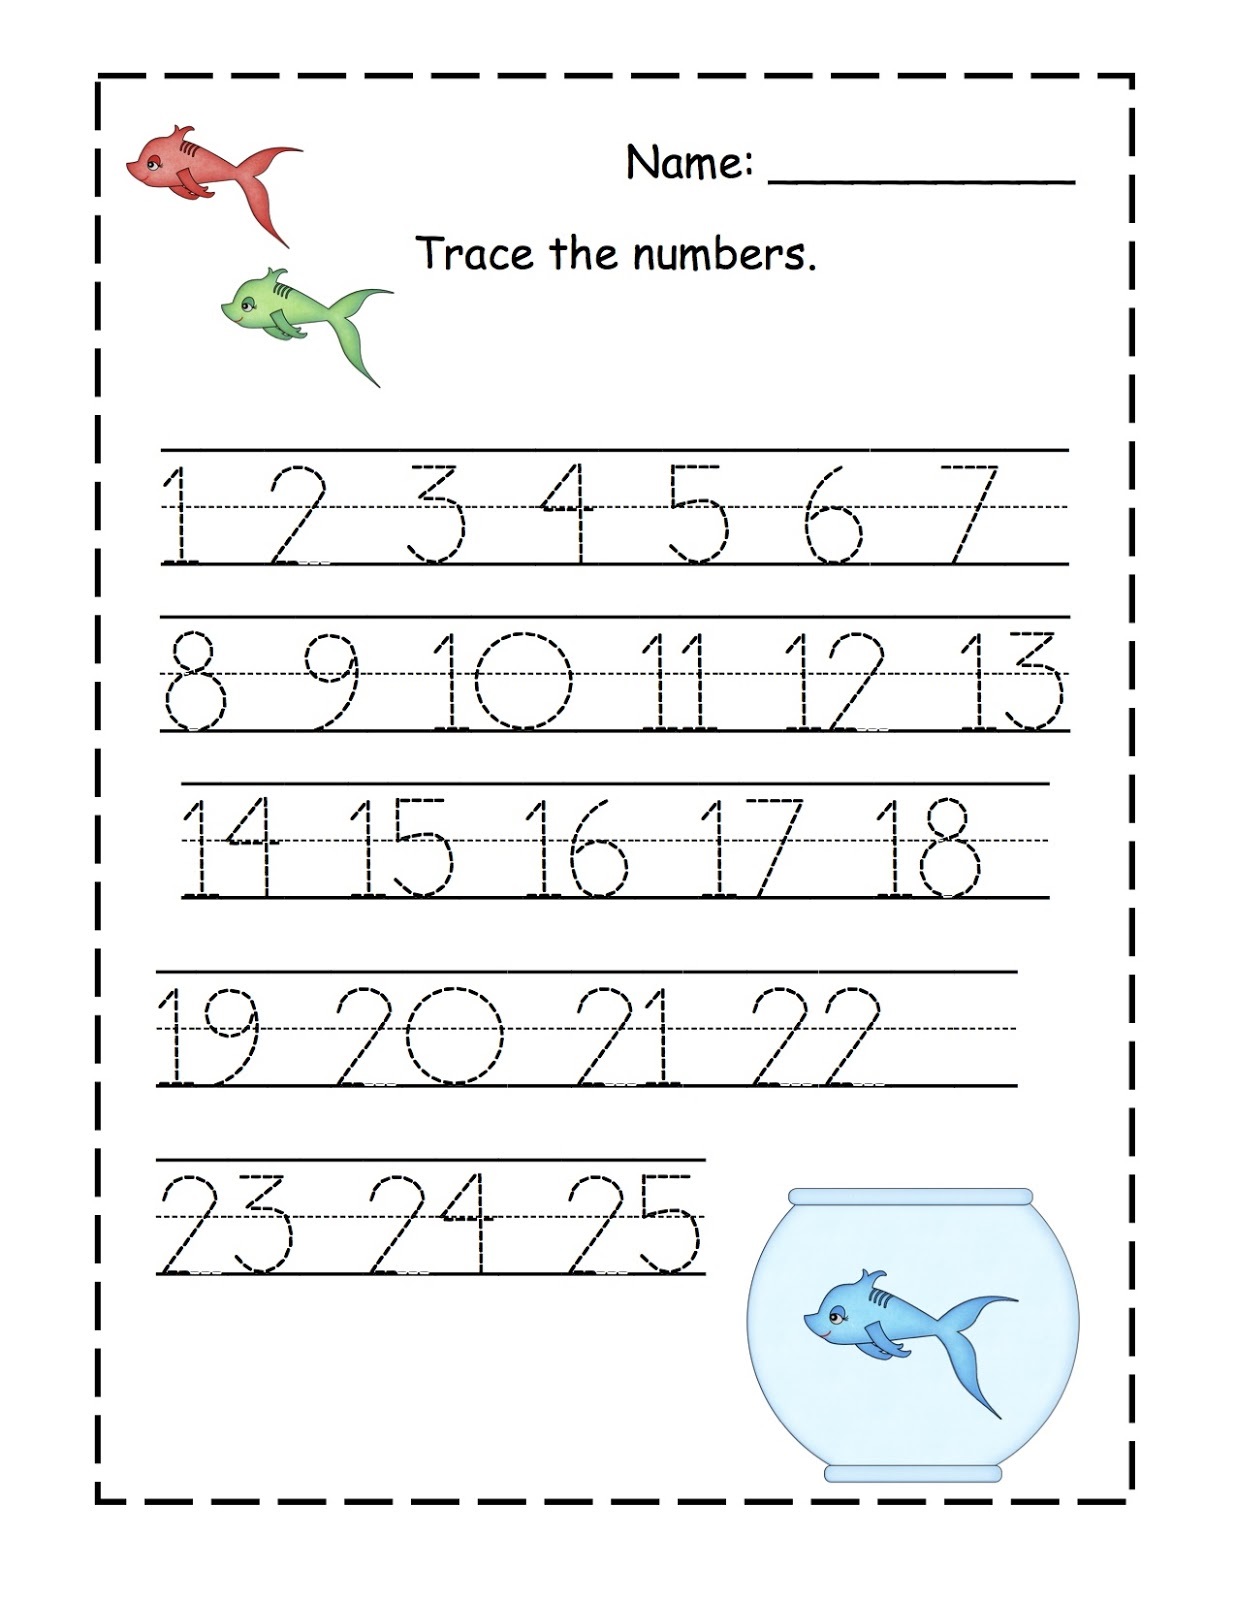 tracing-worksheets-numbers-1-20-tracing-worksheets-preschool-number